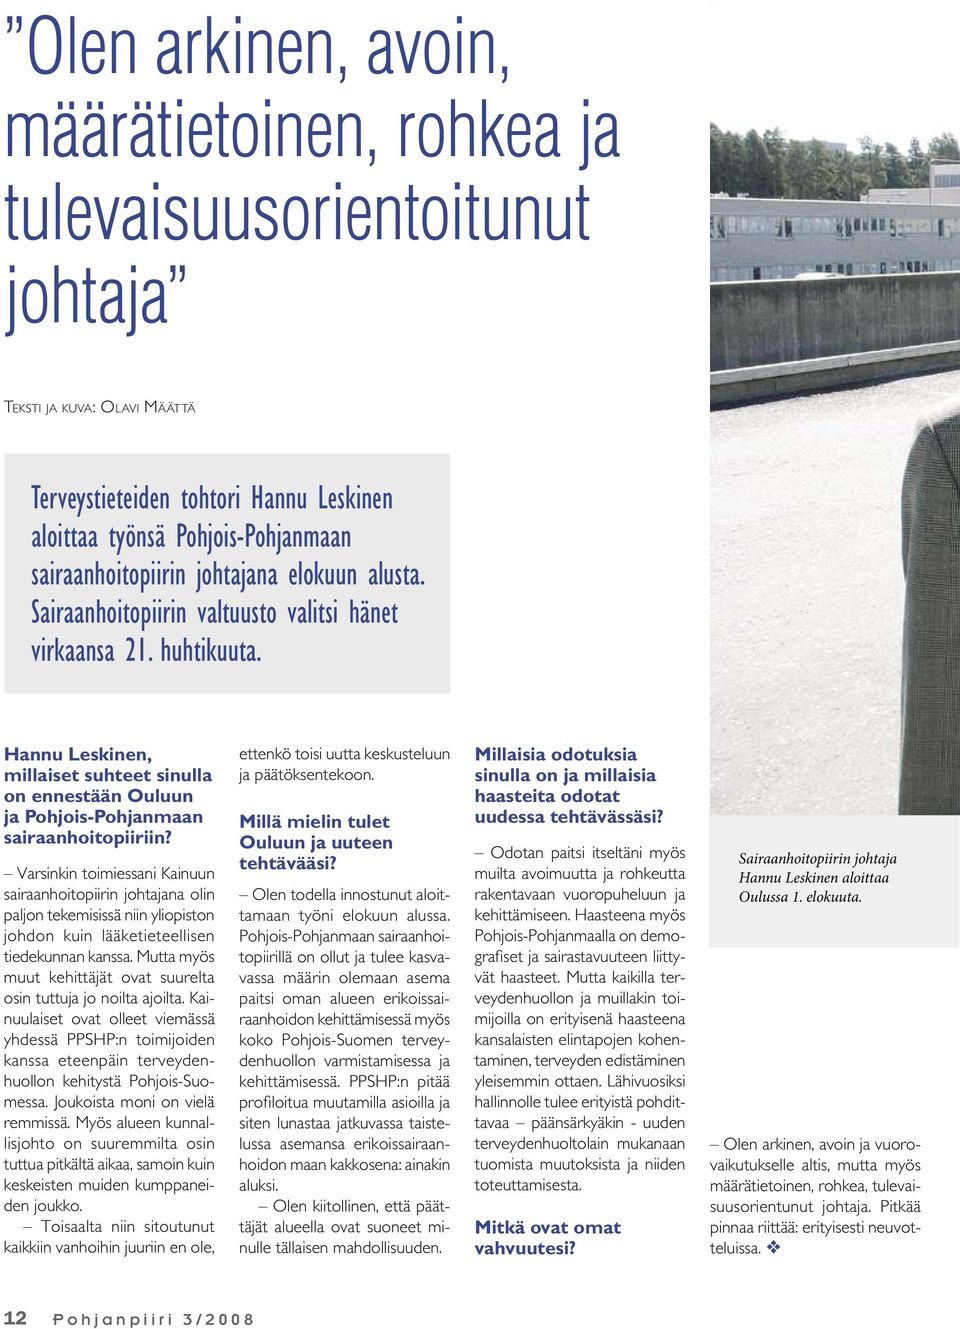 Hannu Leskinen, millaiset suhteet sinulla on ennestään Ouluun ja Pohjois-Pohjanmaan sairaanhoitopiiriin?